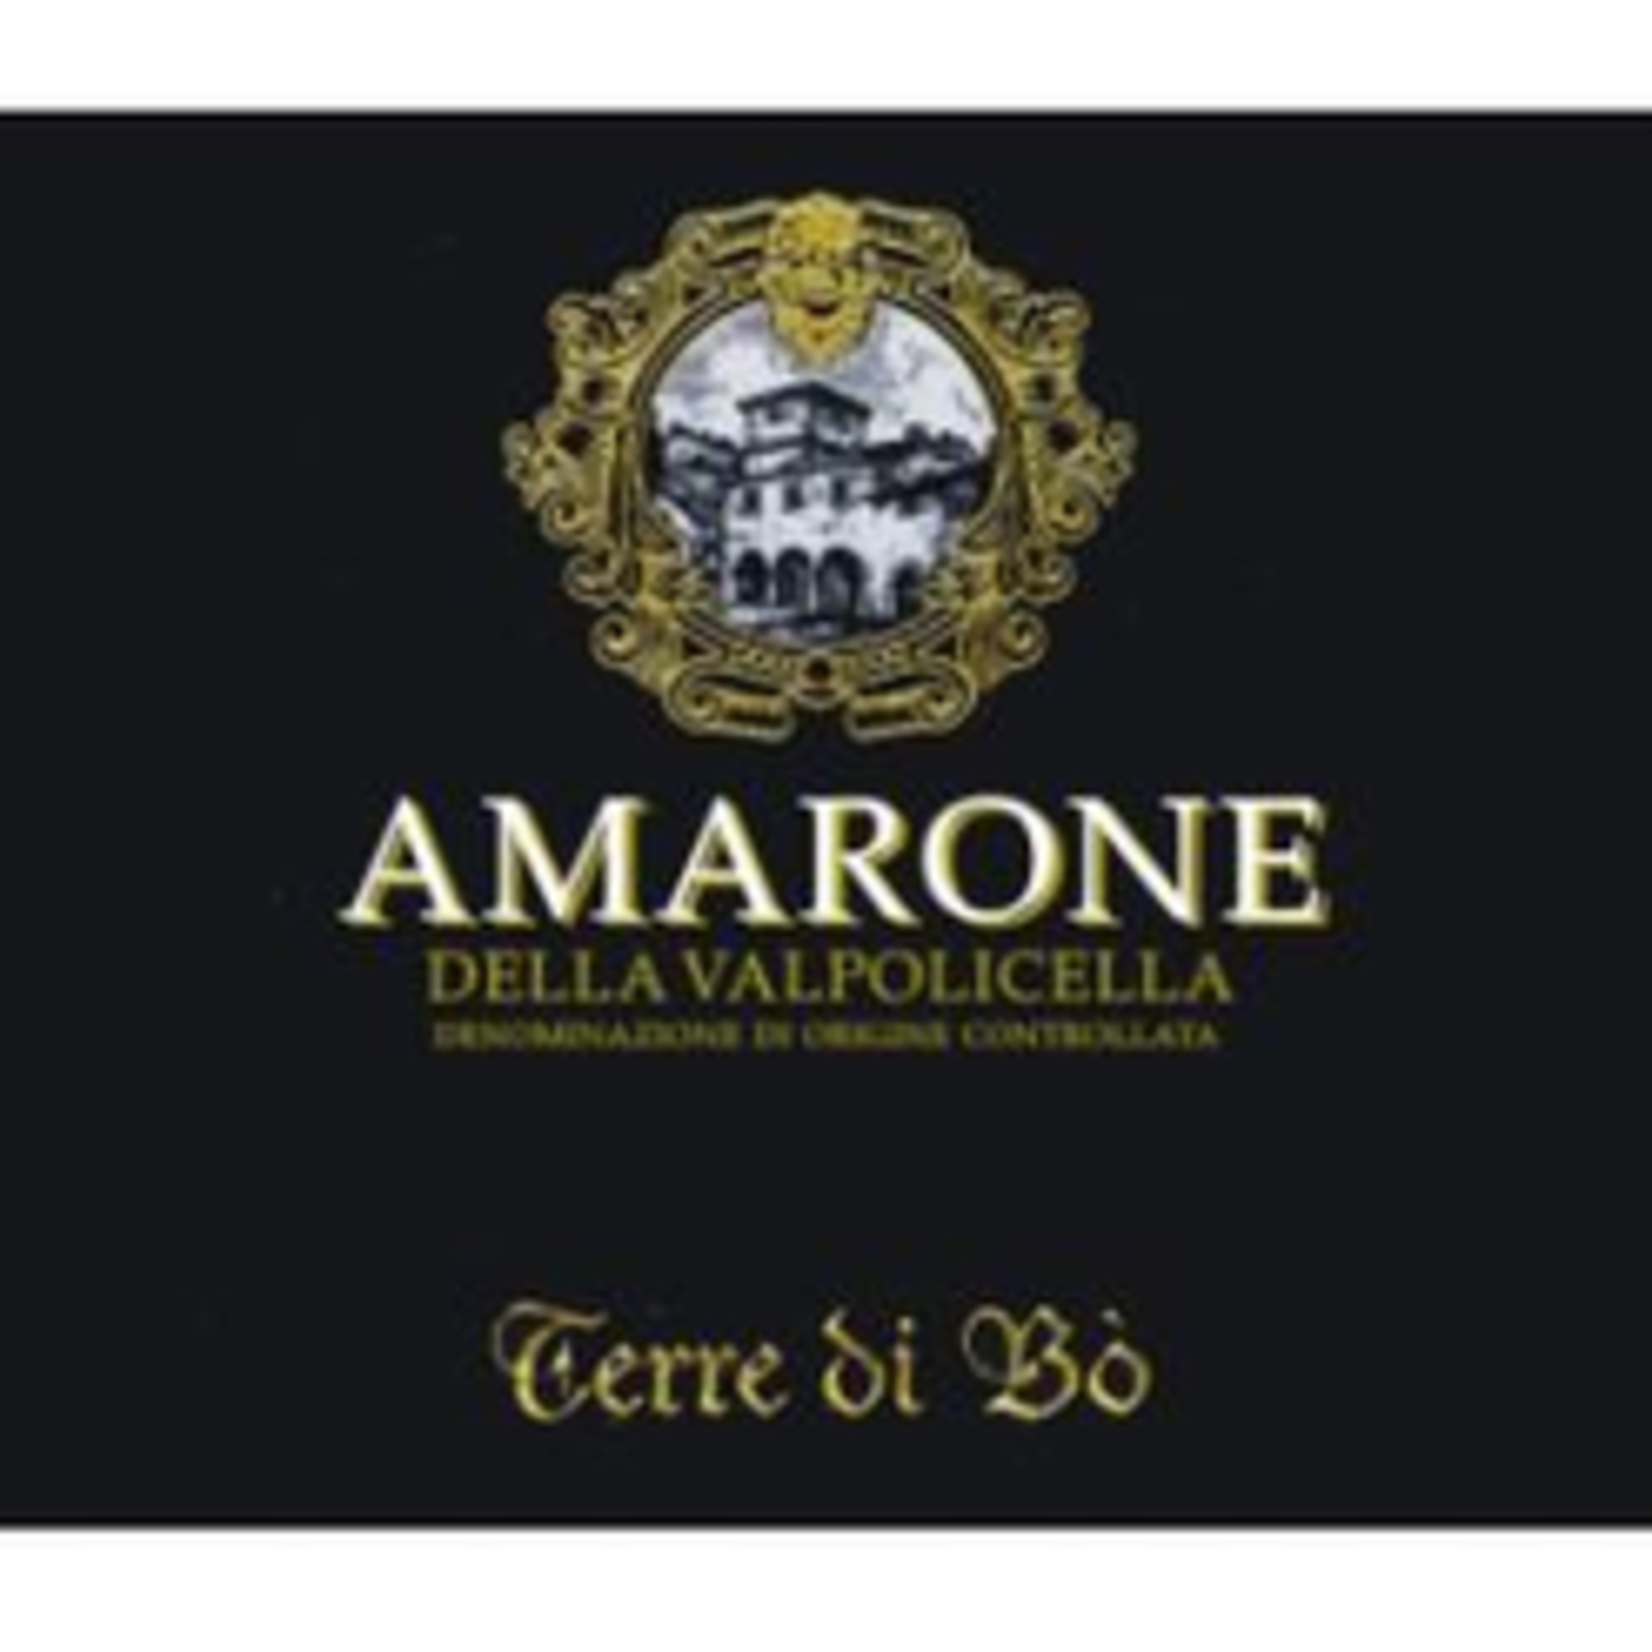 Wine Terre di Bo, Amarone della Valpolicella 2018